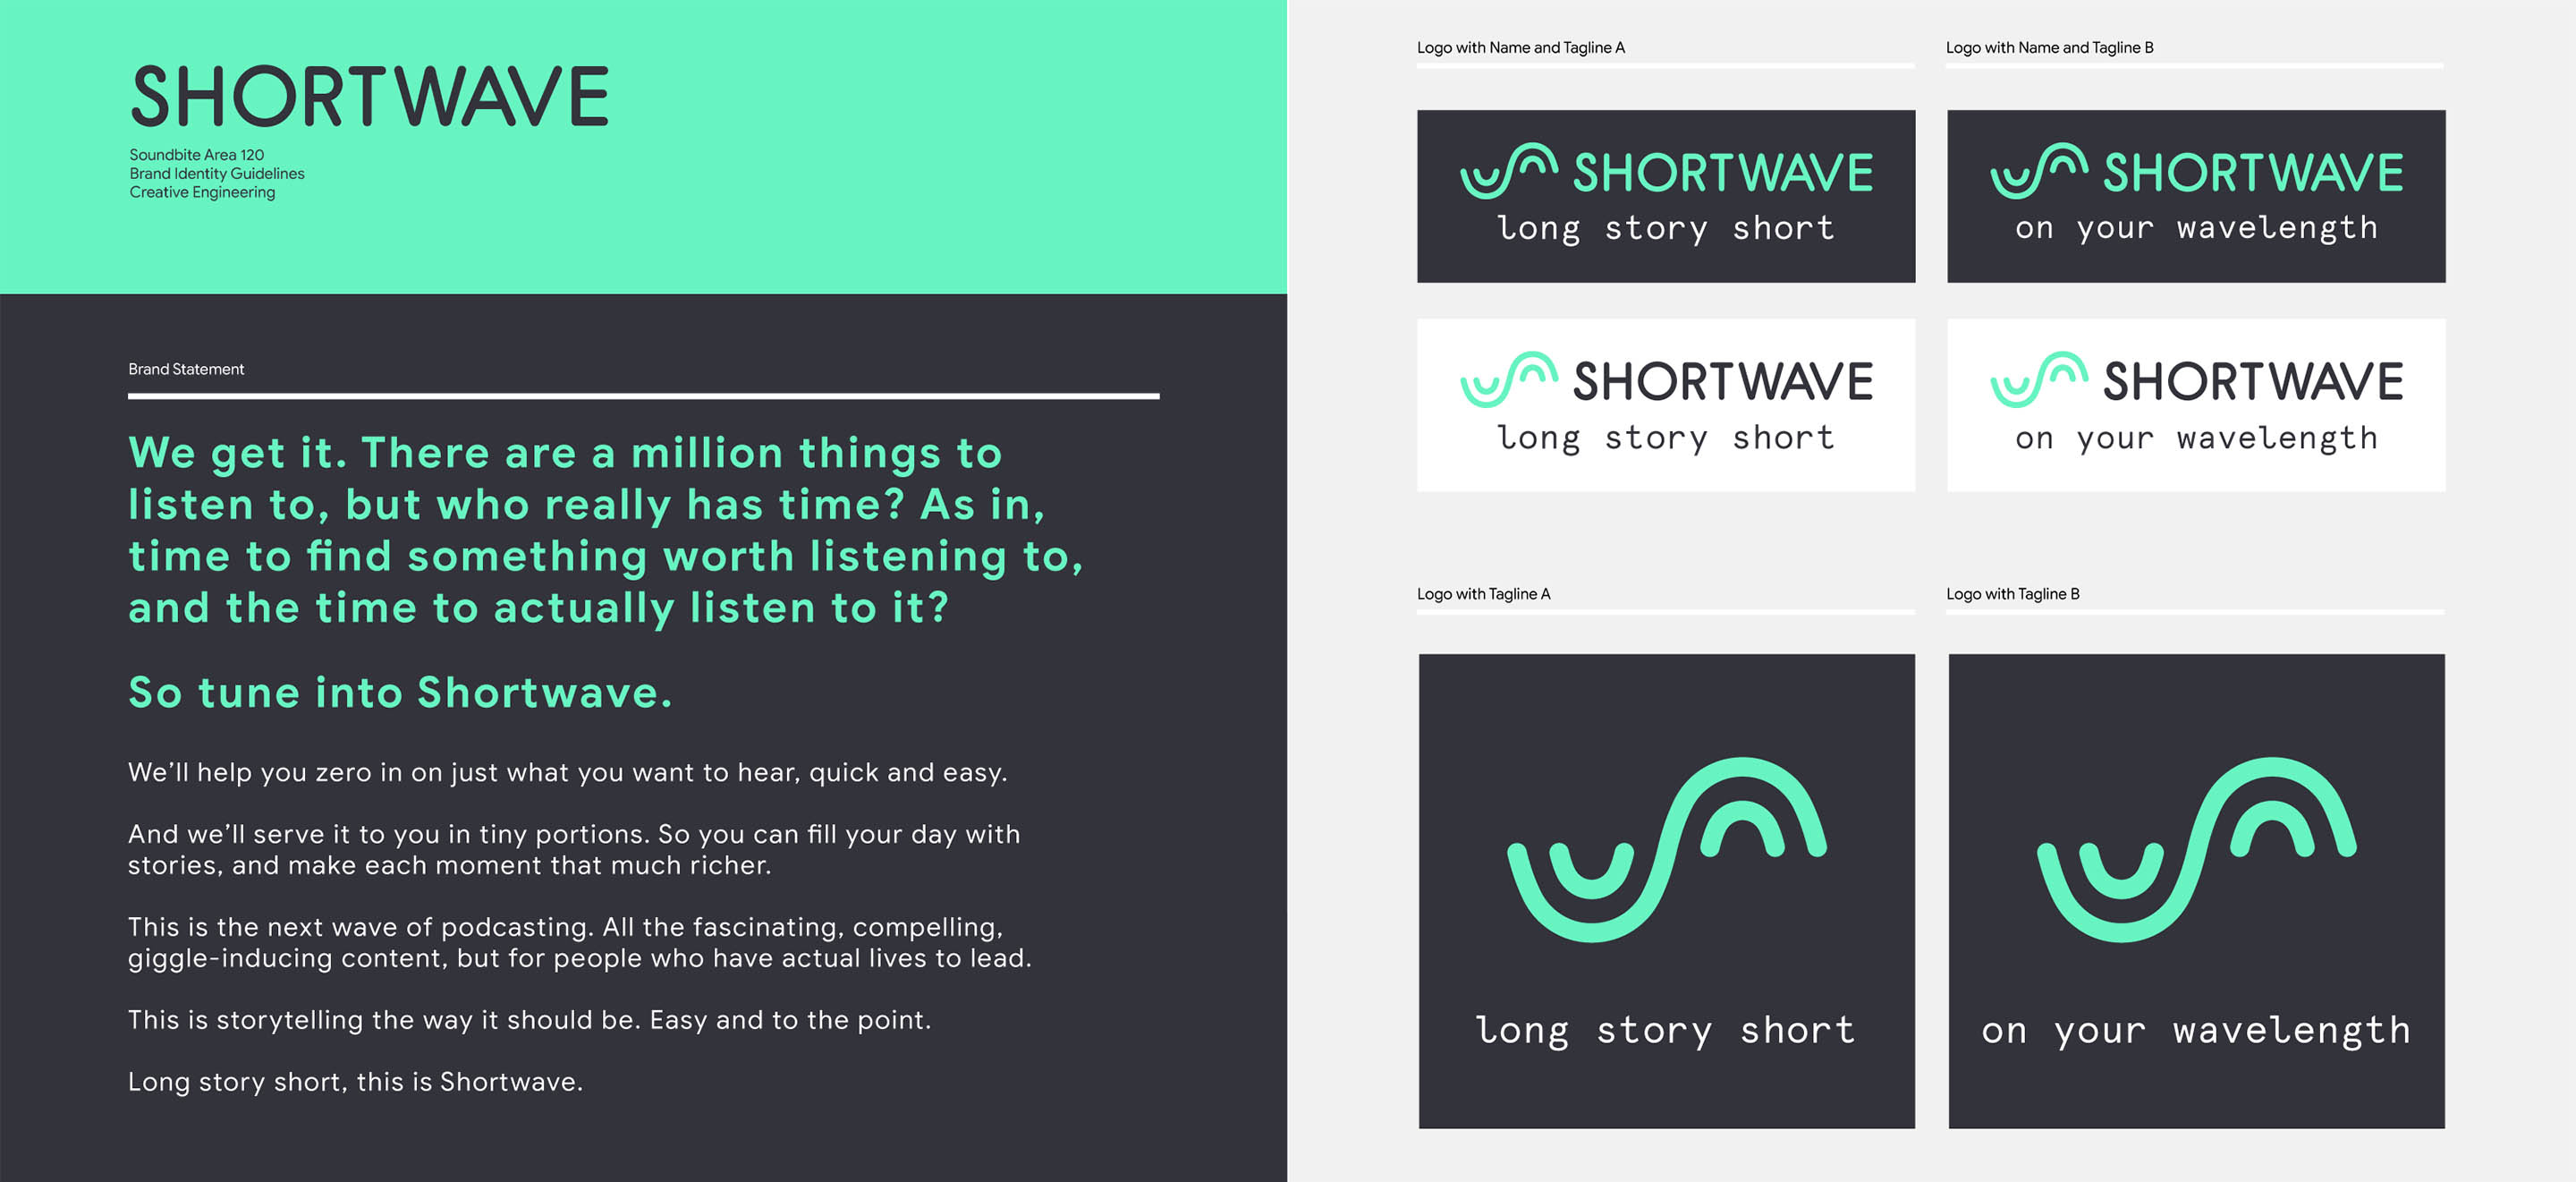 Shortwave description and branding